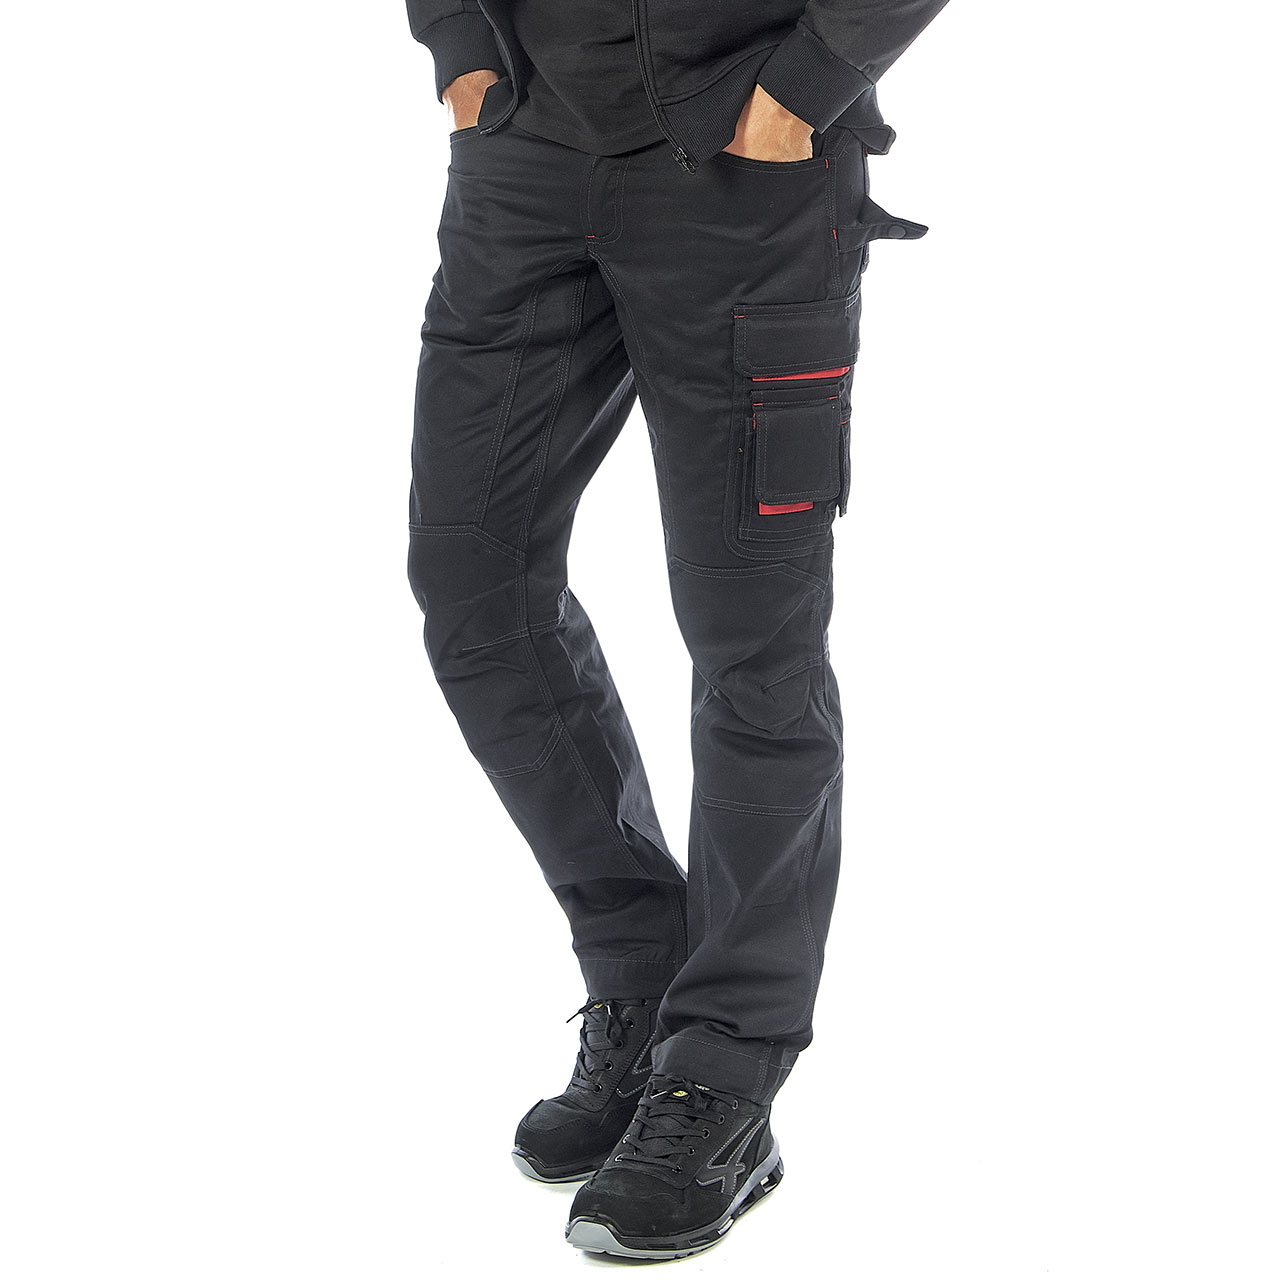 pantalone da lavoro upower modello smile colore black carbon indossato vista laterale sinistra